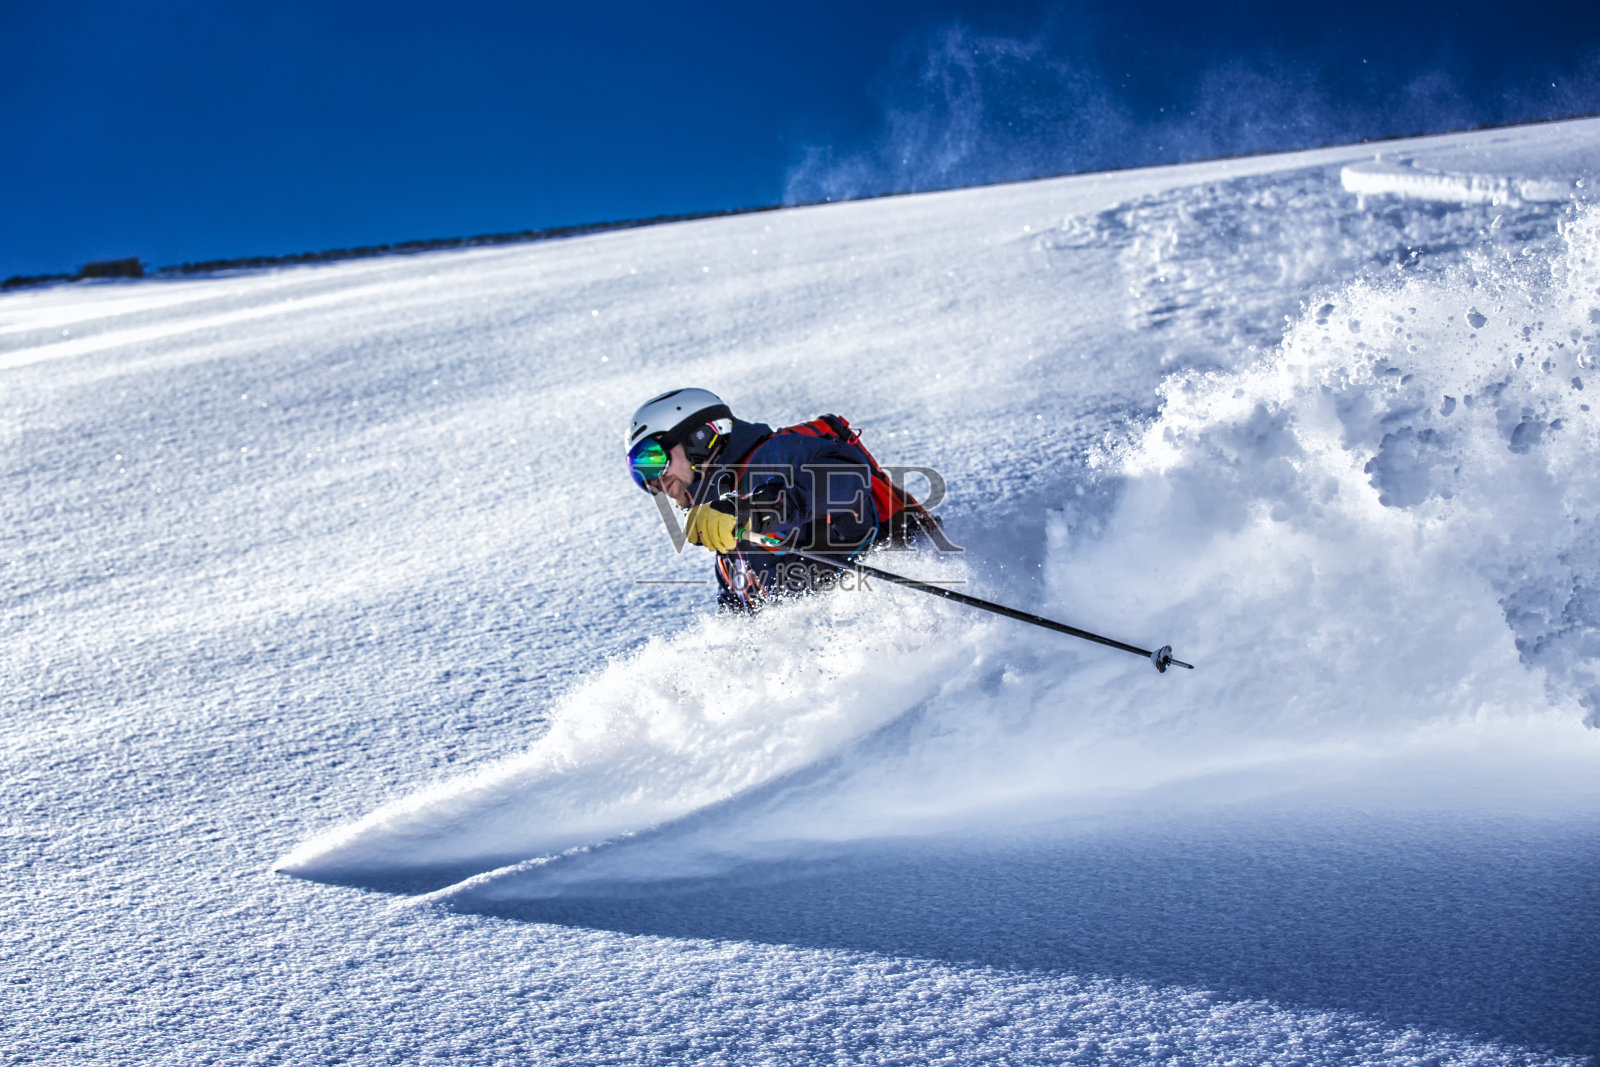 极速滑雪者在粉末雪中照片摄影图片